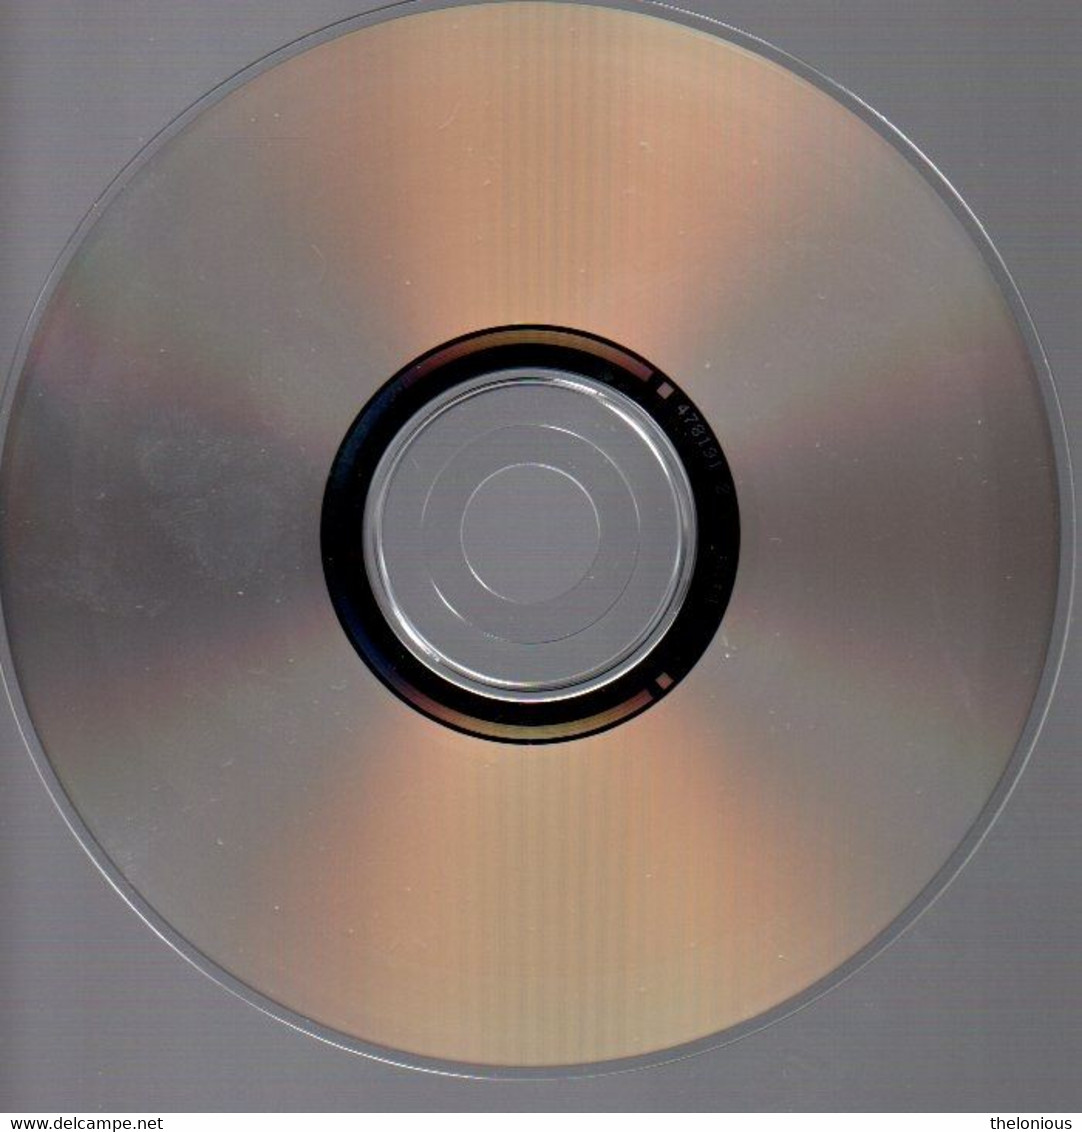 # CD: Jackie McLean - Musica Jazz 4781912, EMI 4781912 - Jazz